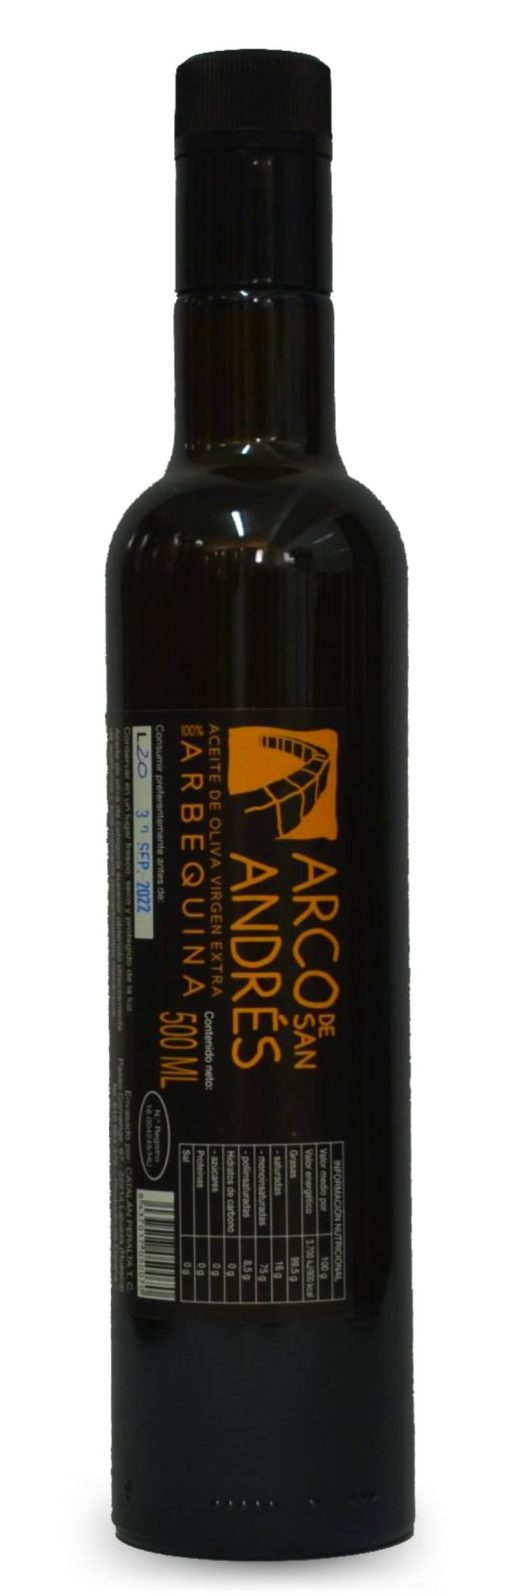 ArcoDeSanAndres AOVE Arbequino Botella 500ml LU 001 1671622386